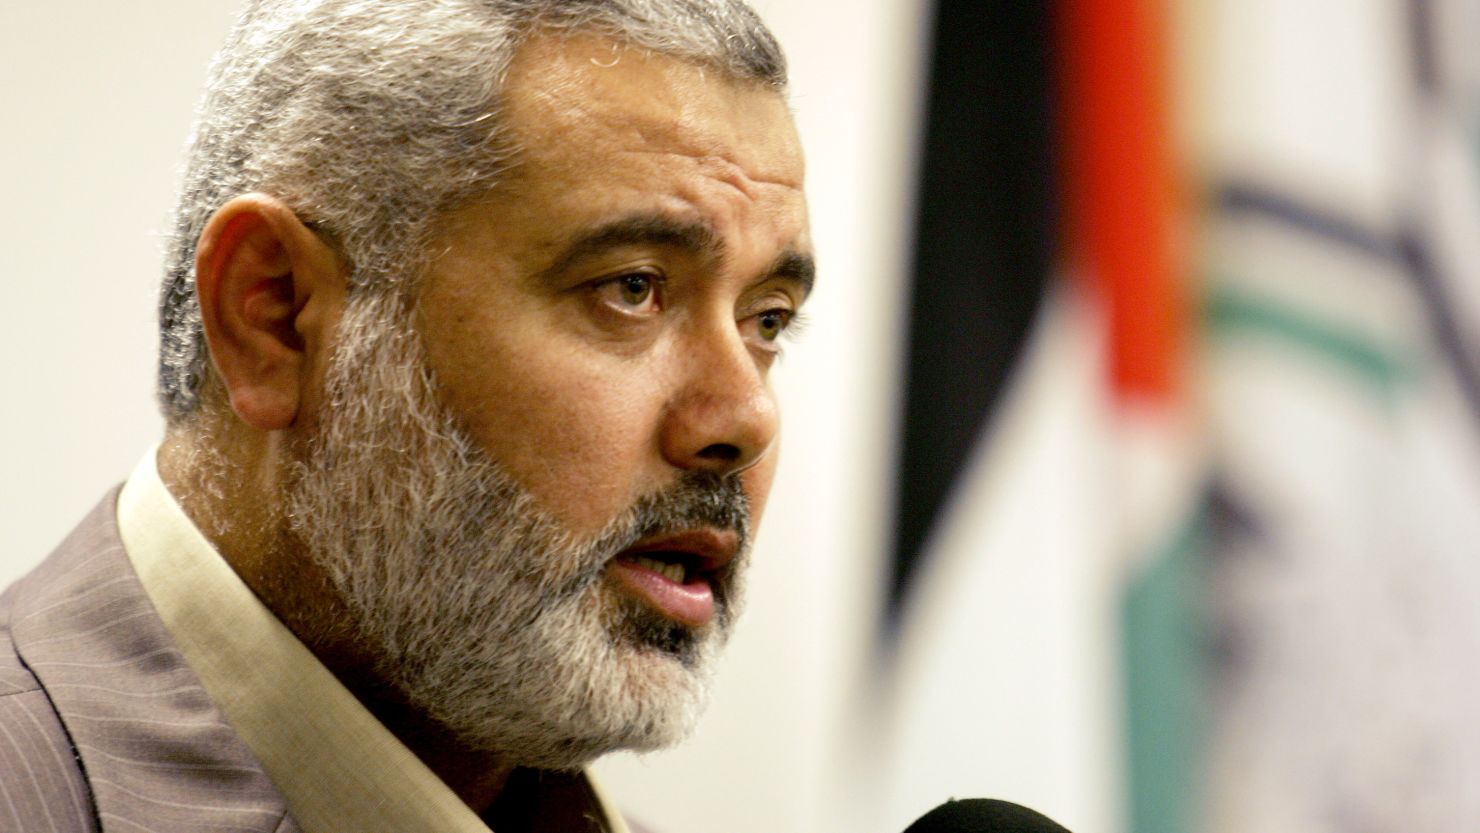 Hamas: "No rilascio ostaggi senza scarcerazione di tutti i prigionieri"